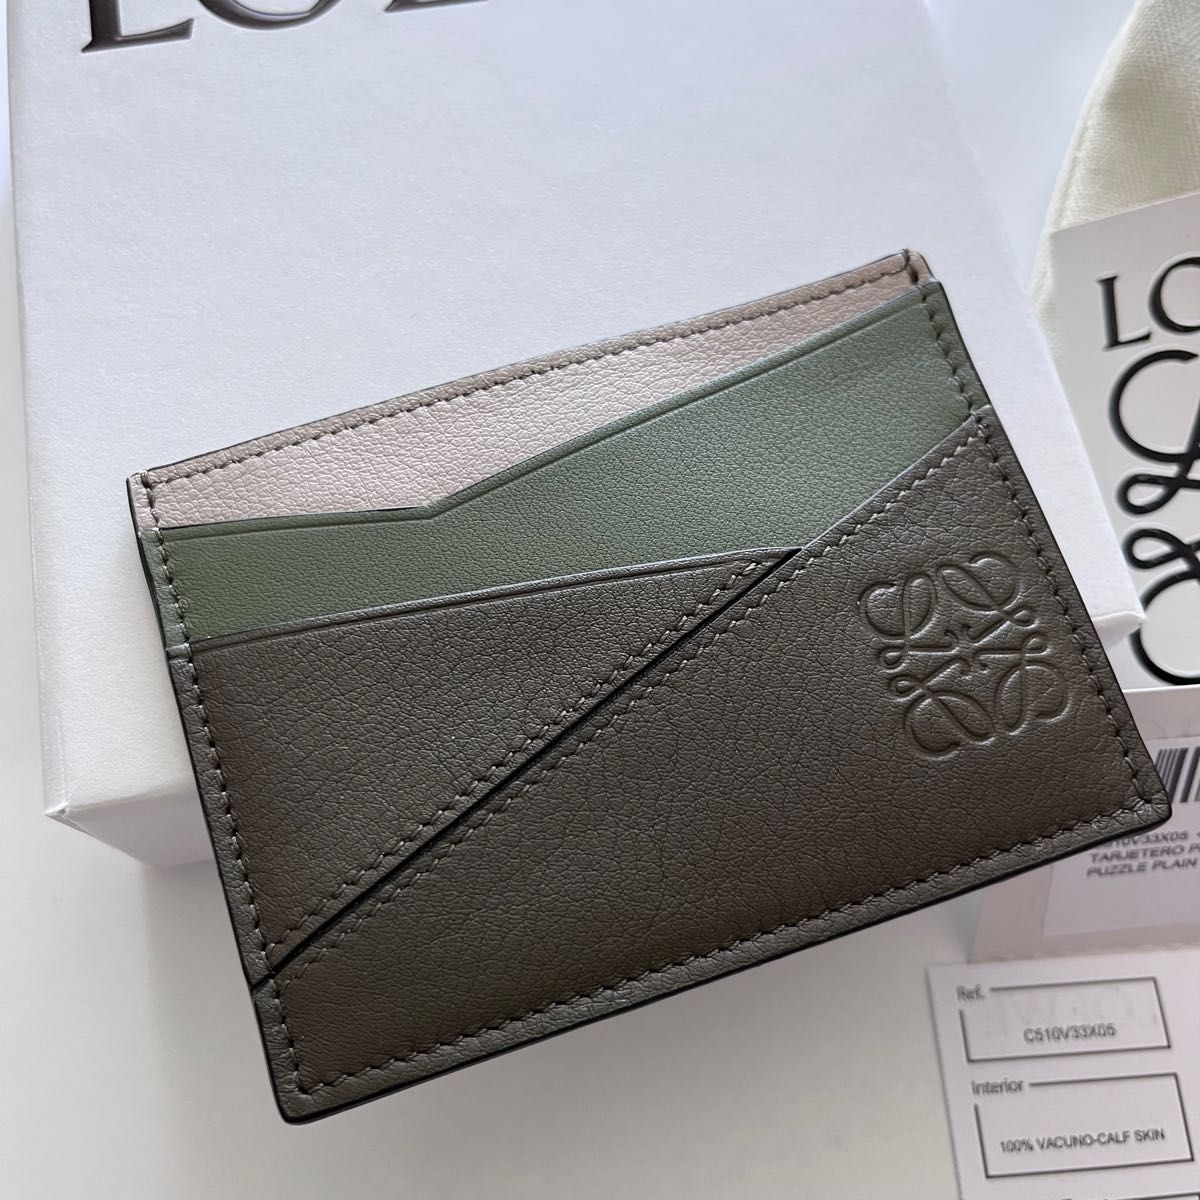 LOEWE ロエベ パズル プレーン カードホルダー グリーン 緑 パスケース 定期入れ 名刺入れ カードケース 新品 ミニ財布